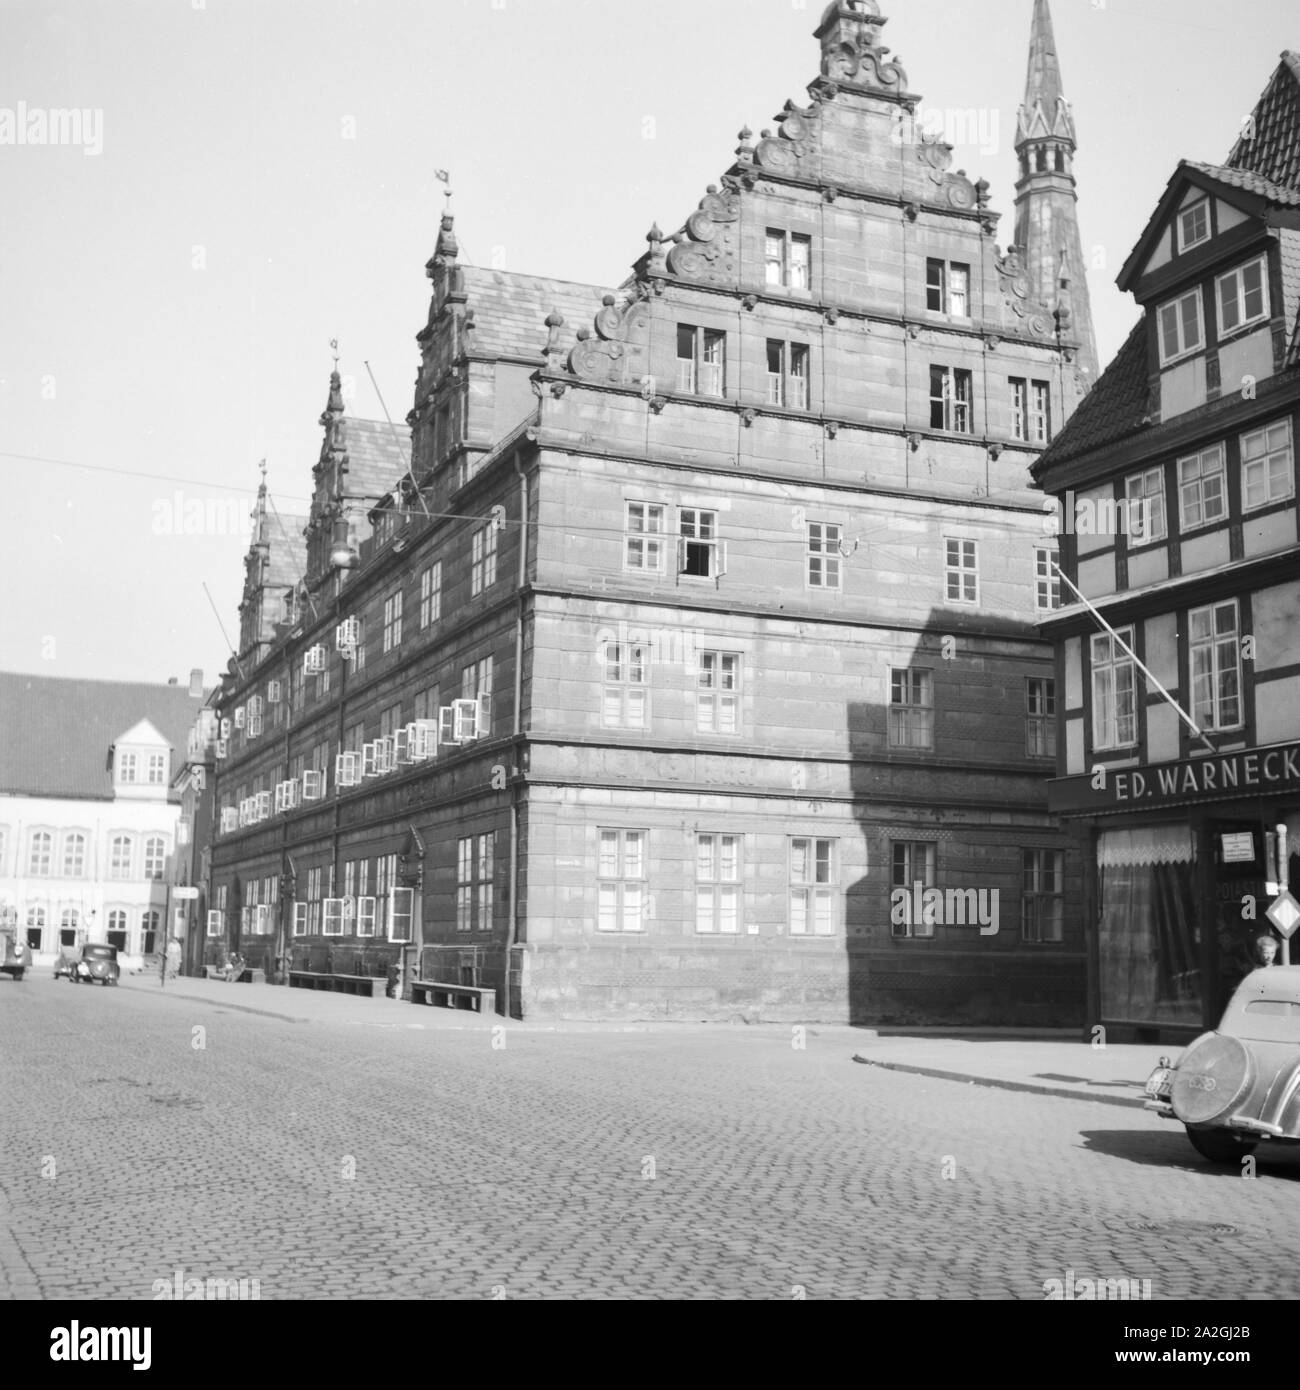 Das Hochzeitshaus in der Innenstadt von Hameln an der Weser, Deutschland 1930er Jahre. Hochzeitshaus patrizierhaus an der Stadt Hameln an der Weser, Deutschland 1930. Stockfoto